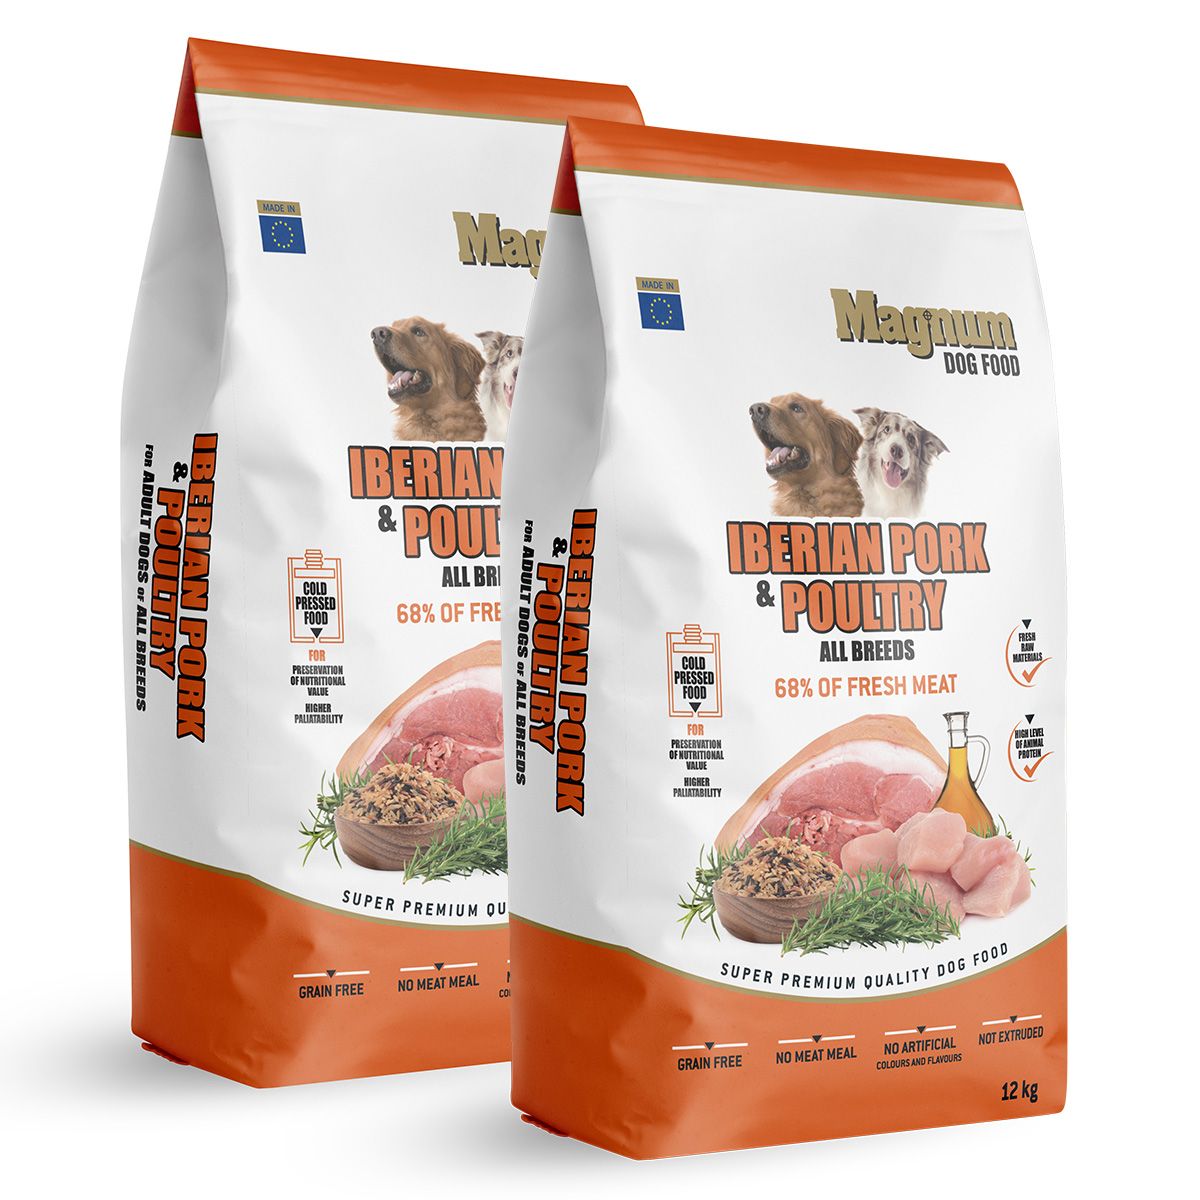 Magnum Iberian Pork & Poultry All Breed 24kg Magnum dog food